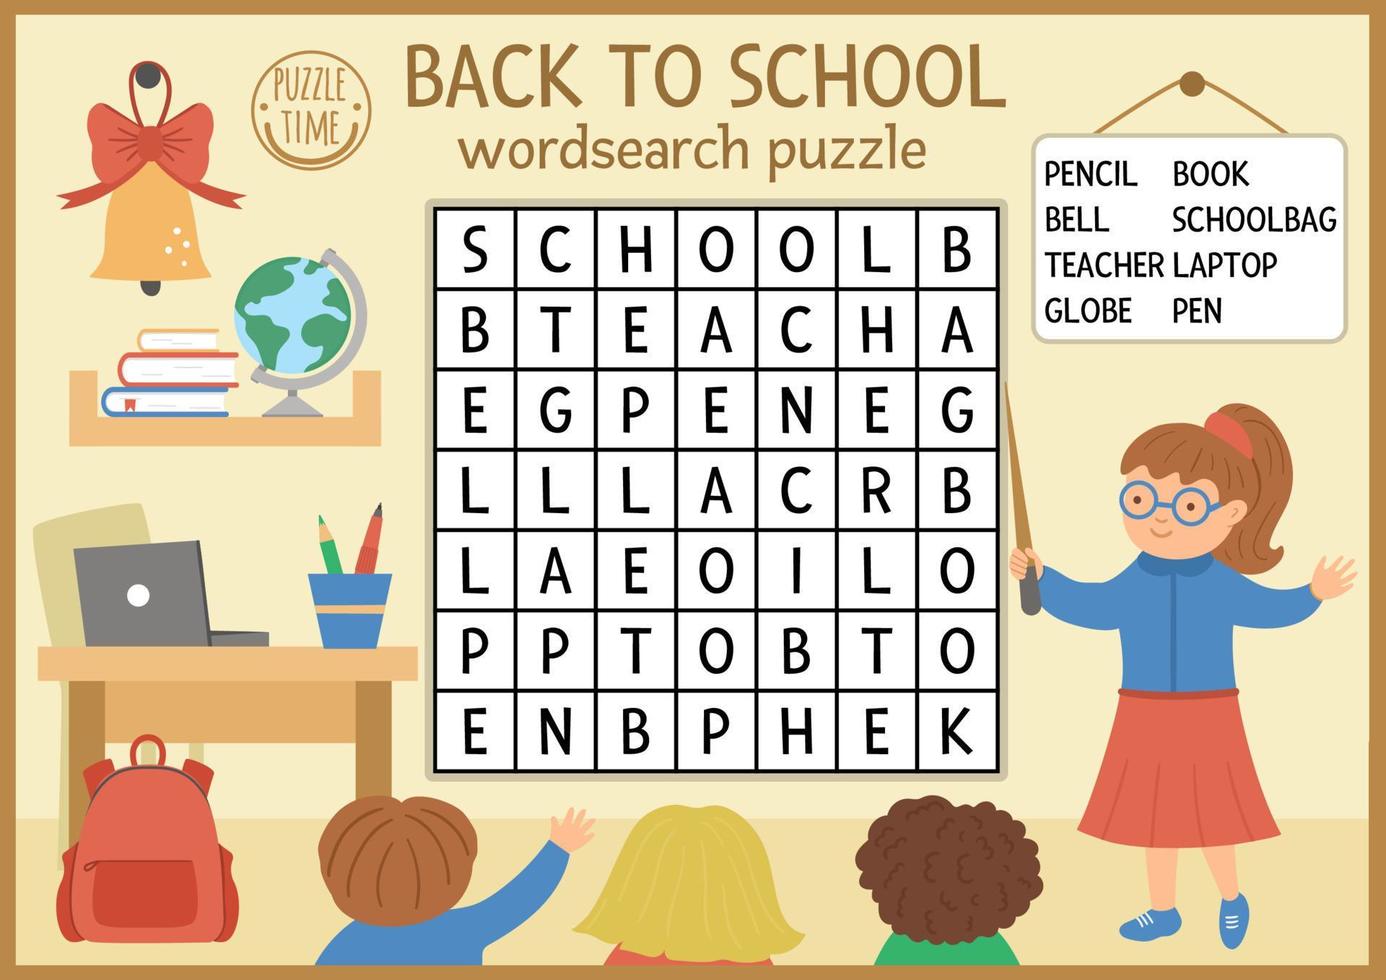 vetor de volta para a escola wordsearch puzzle para crianças. ocrossword outono simples com cena de lição. atividade educacional de palavras-chave com professores em sala de aula, alunos e objetos escolares.